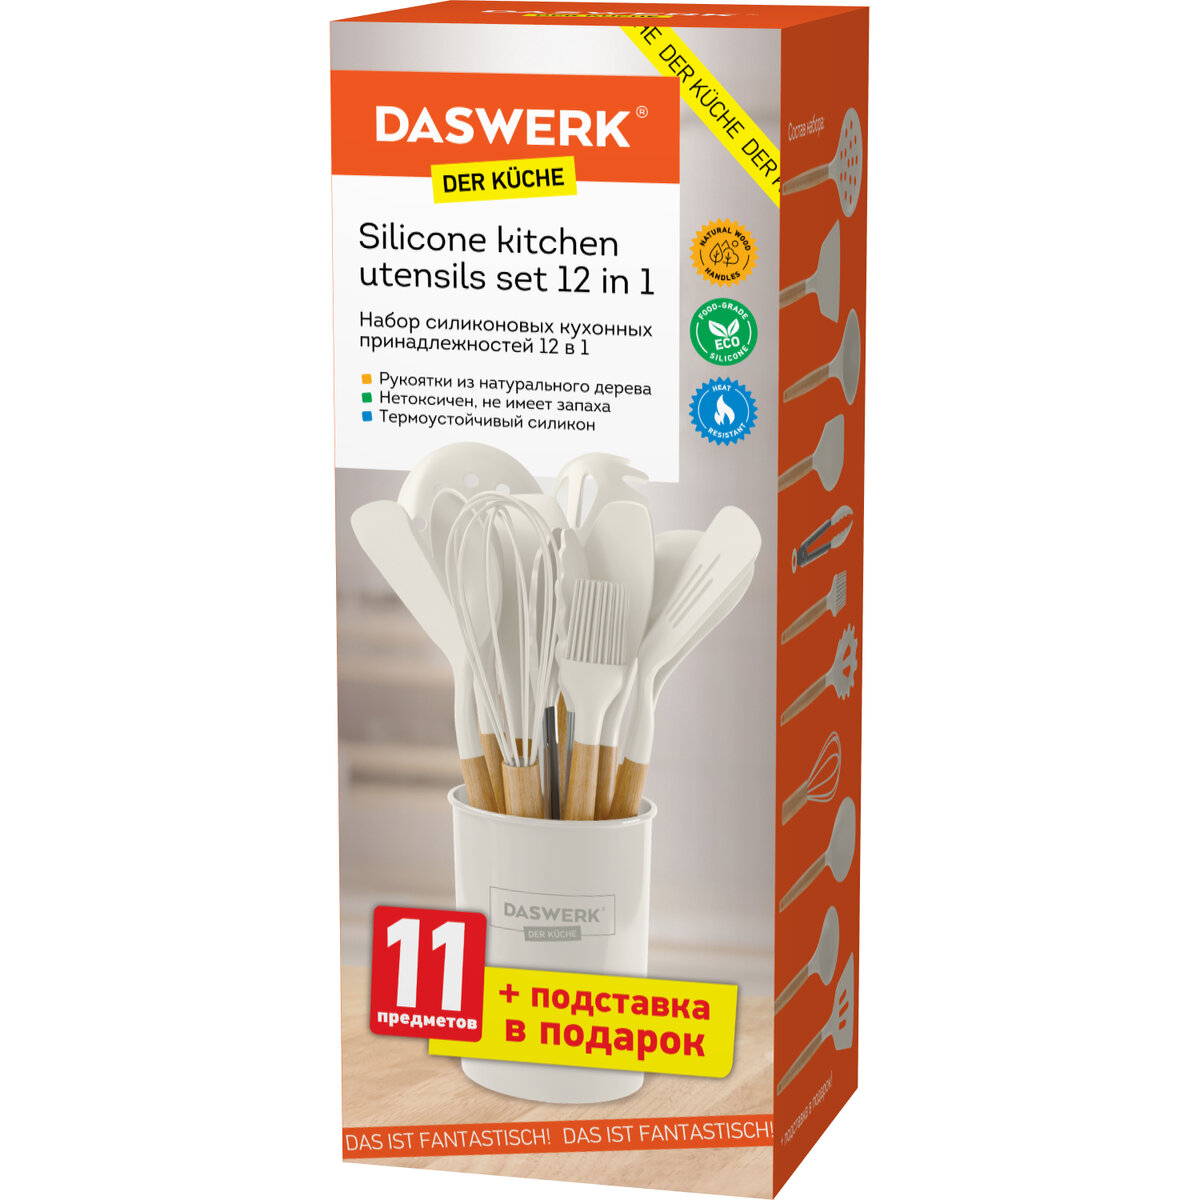 Набор кухонных принадлежностей DASWERK силиконовые с деревянными ручками 12 в 1 - фото 6